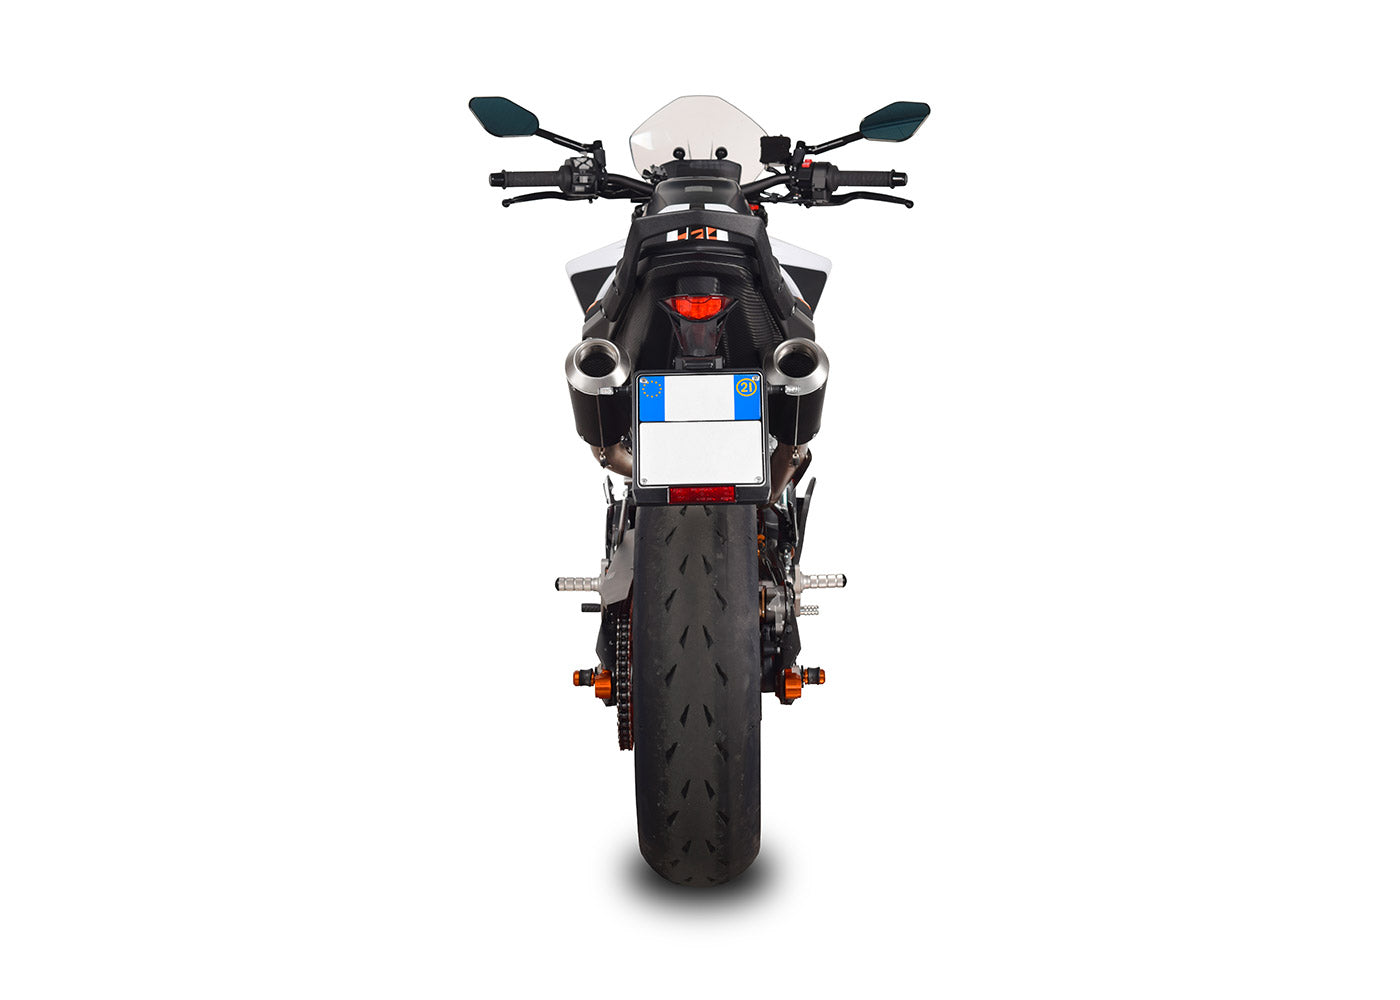 SPARK KTM 790/890 Duke/R Semi-Full Double Exhaust System "MotoGP" (EU homologated; dark)